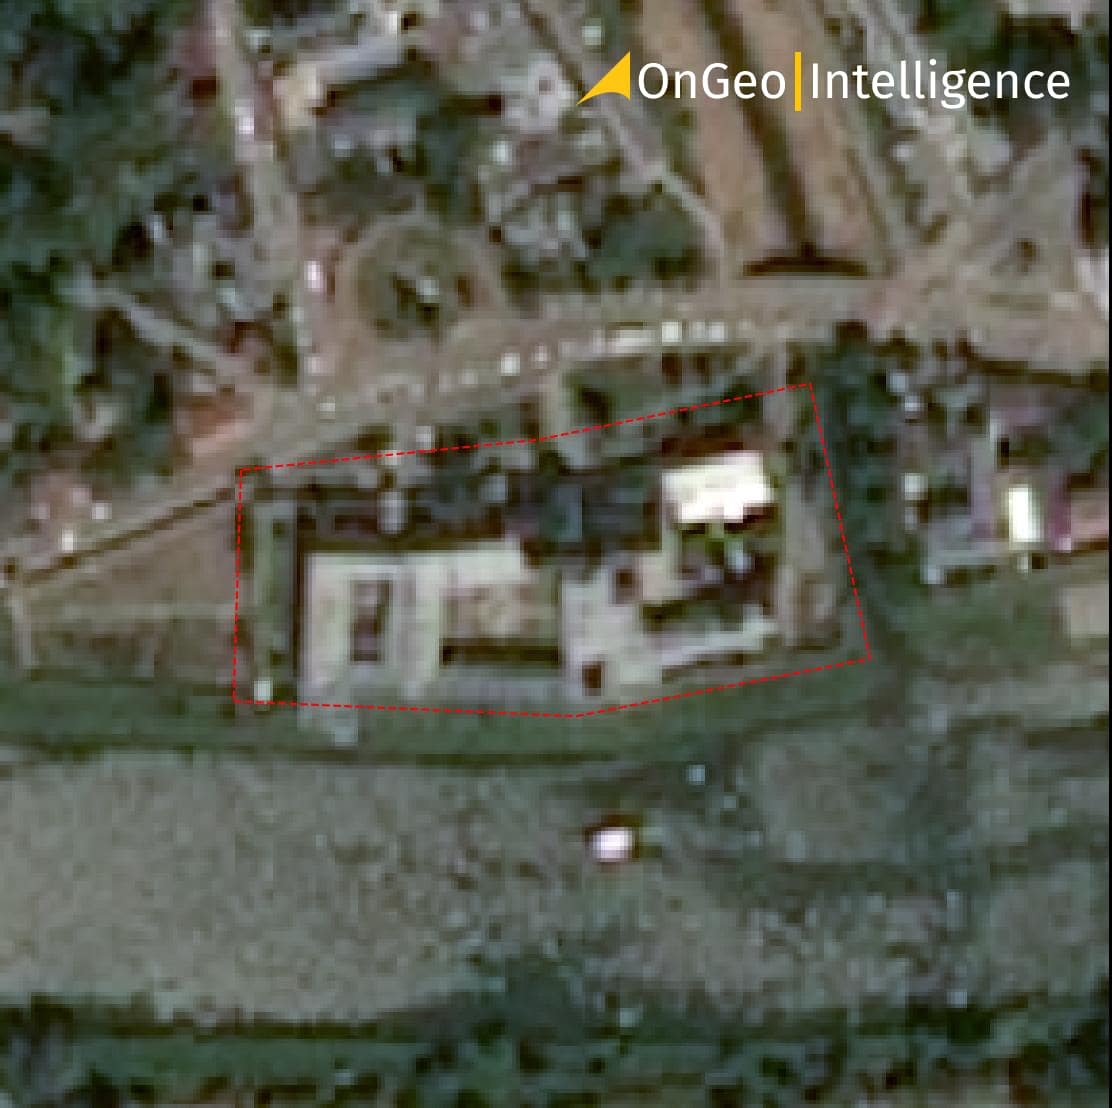 Przykładowe zdjęcie satelitarne o rozdzielczości 1,3 metra